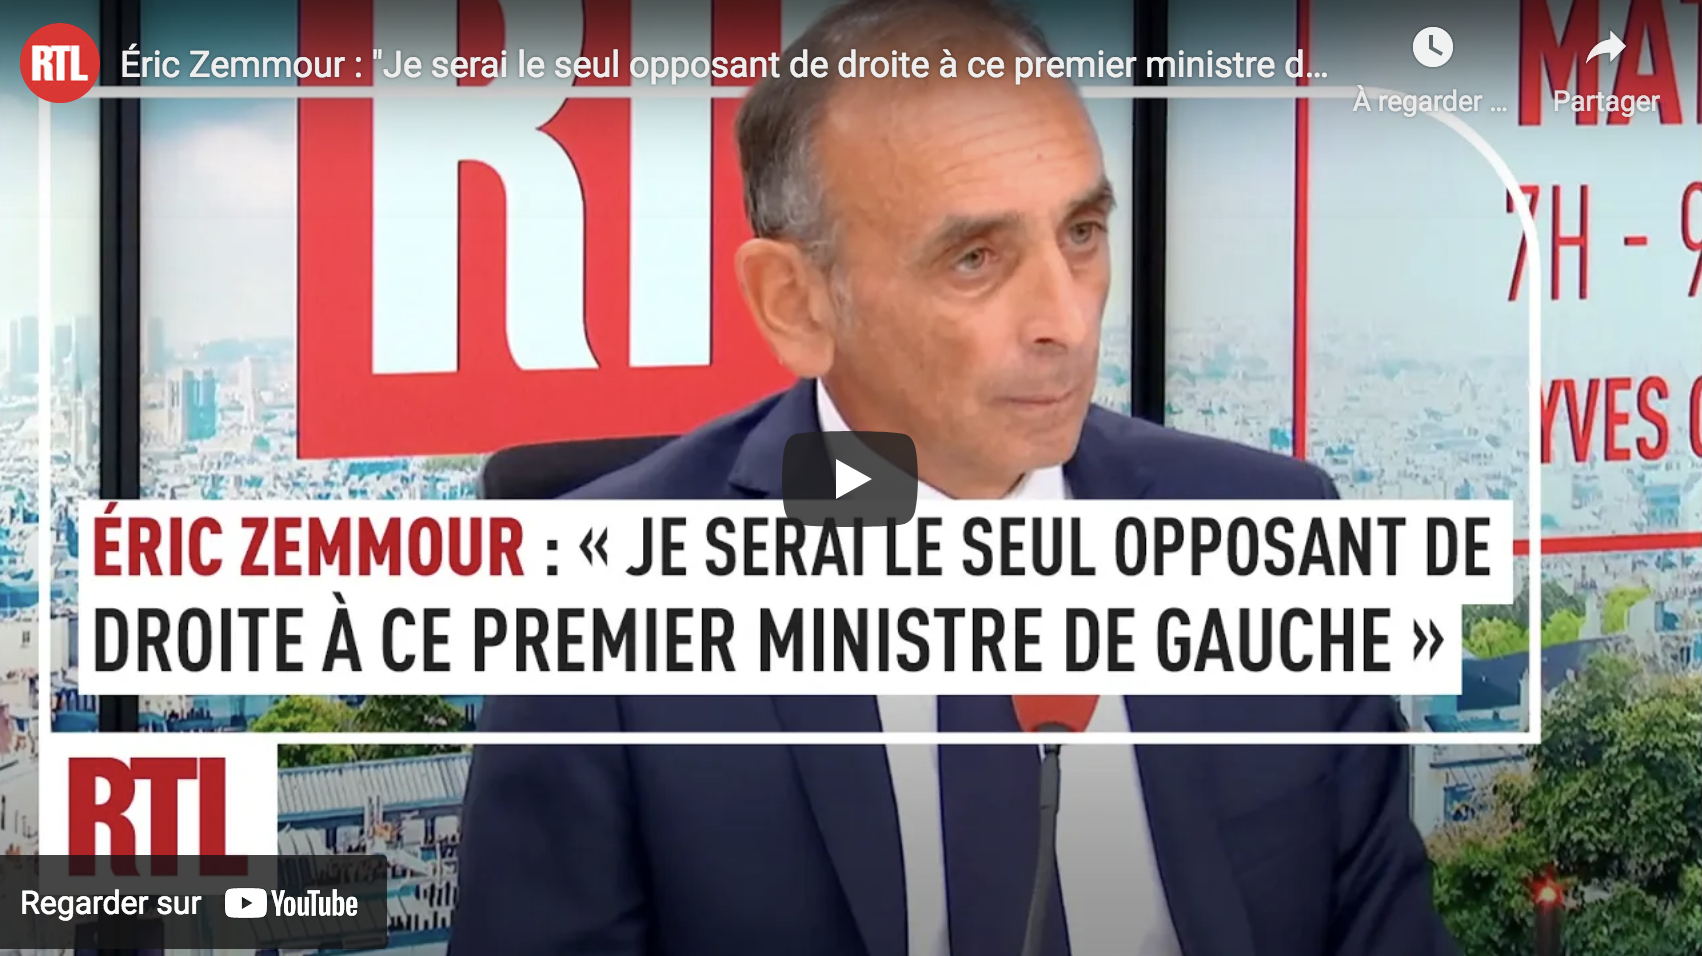 Éric Zemmour : “Je serai le seul opposant de droite à ce premier ministre de gauche” (VIDÉO)